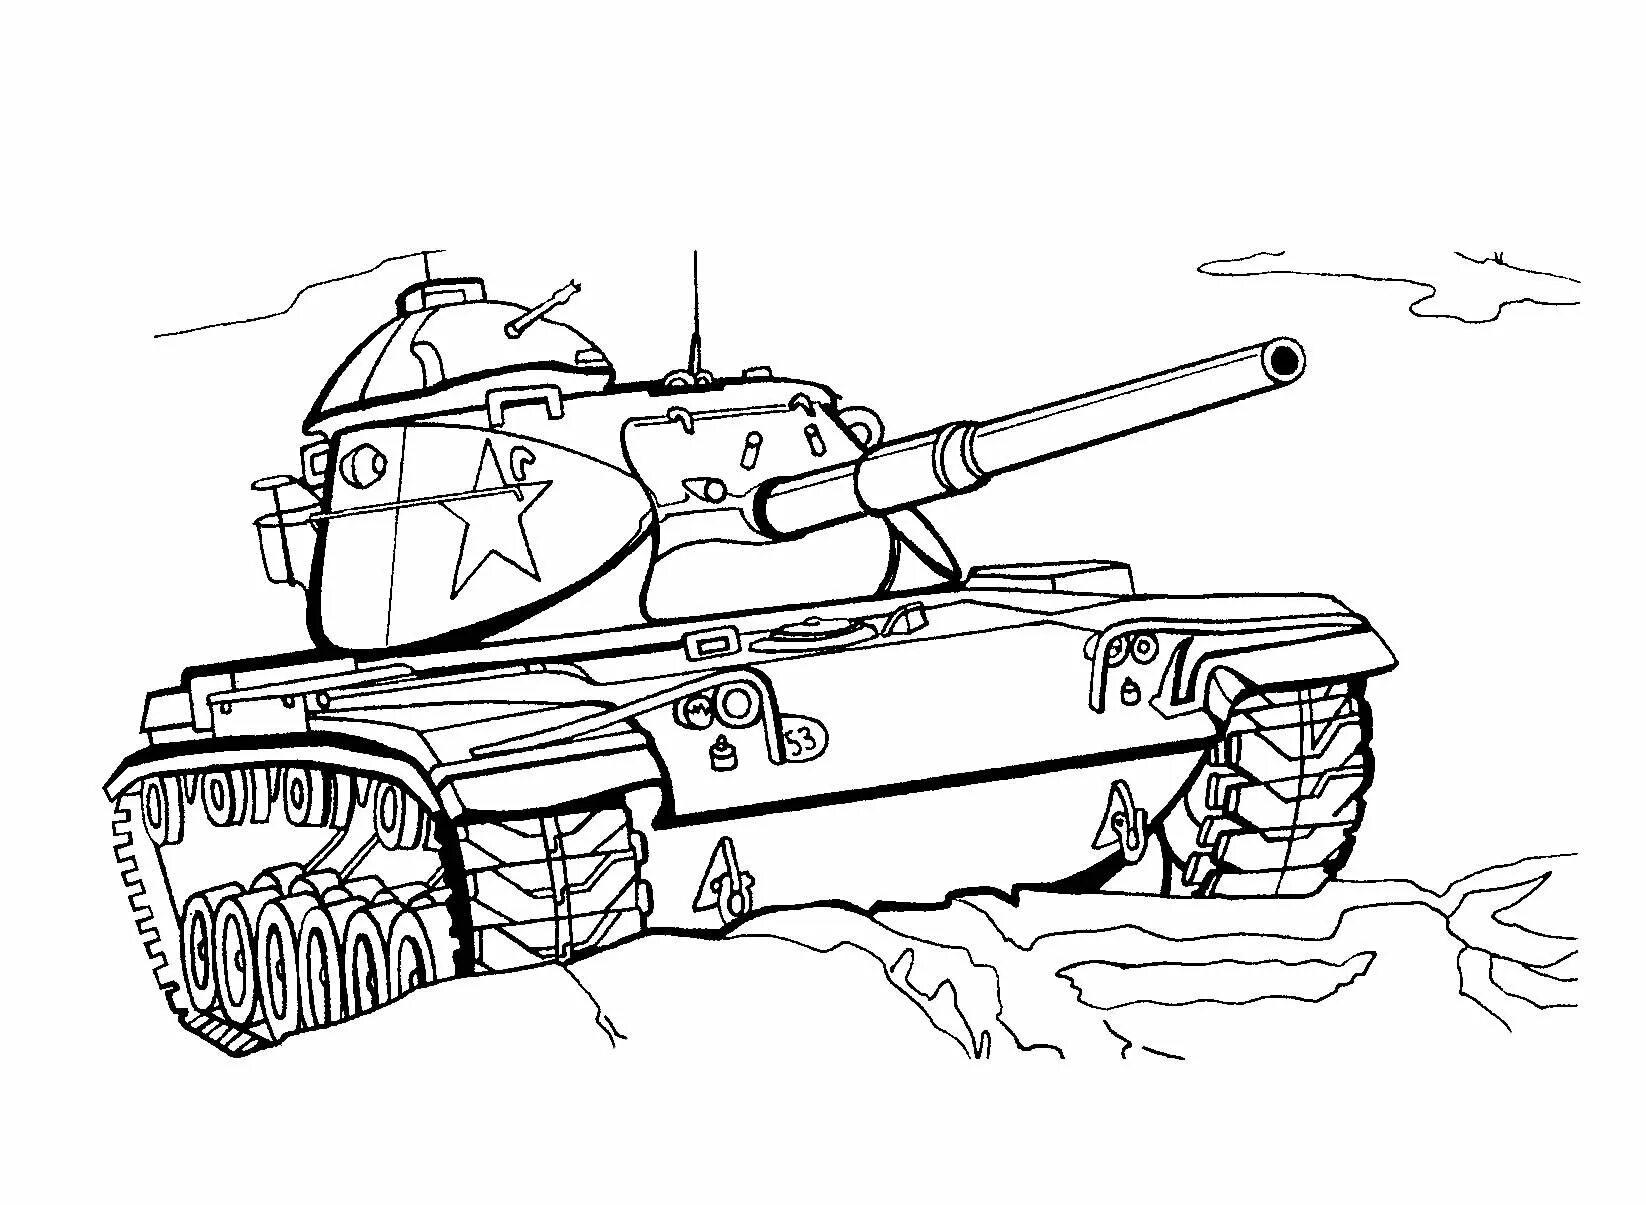 Раскраска танки для детей 3 года. Раскраски танков World of Tanks т34. Раскраска танк т 34. Раскраска танков в World of Tanks. Раскраска ворлд оф танк т 34.